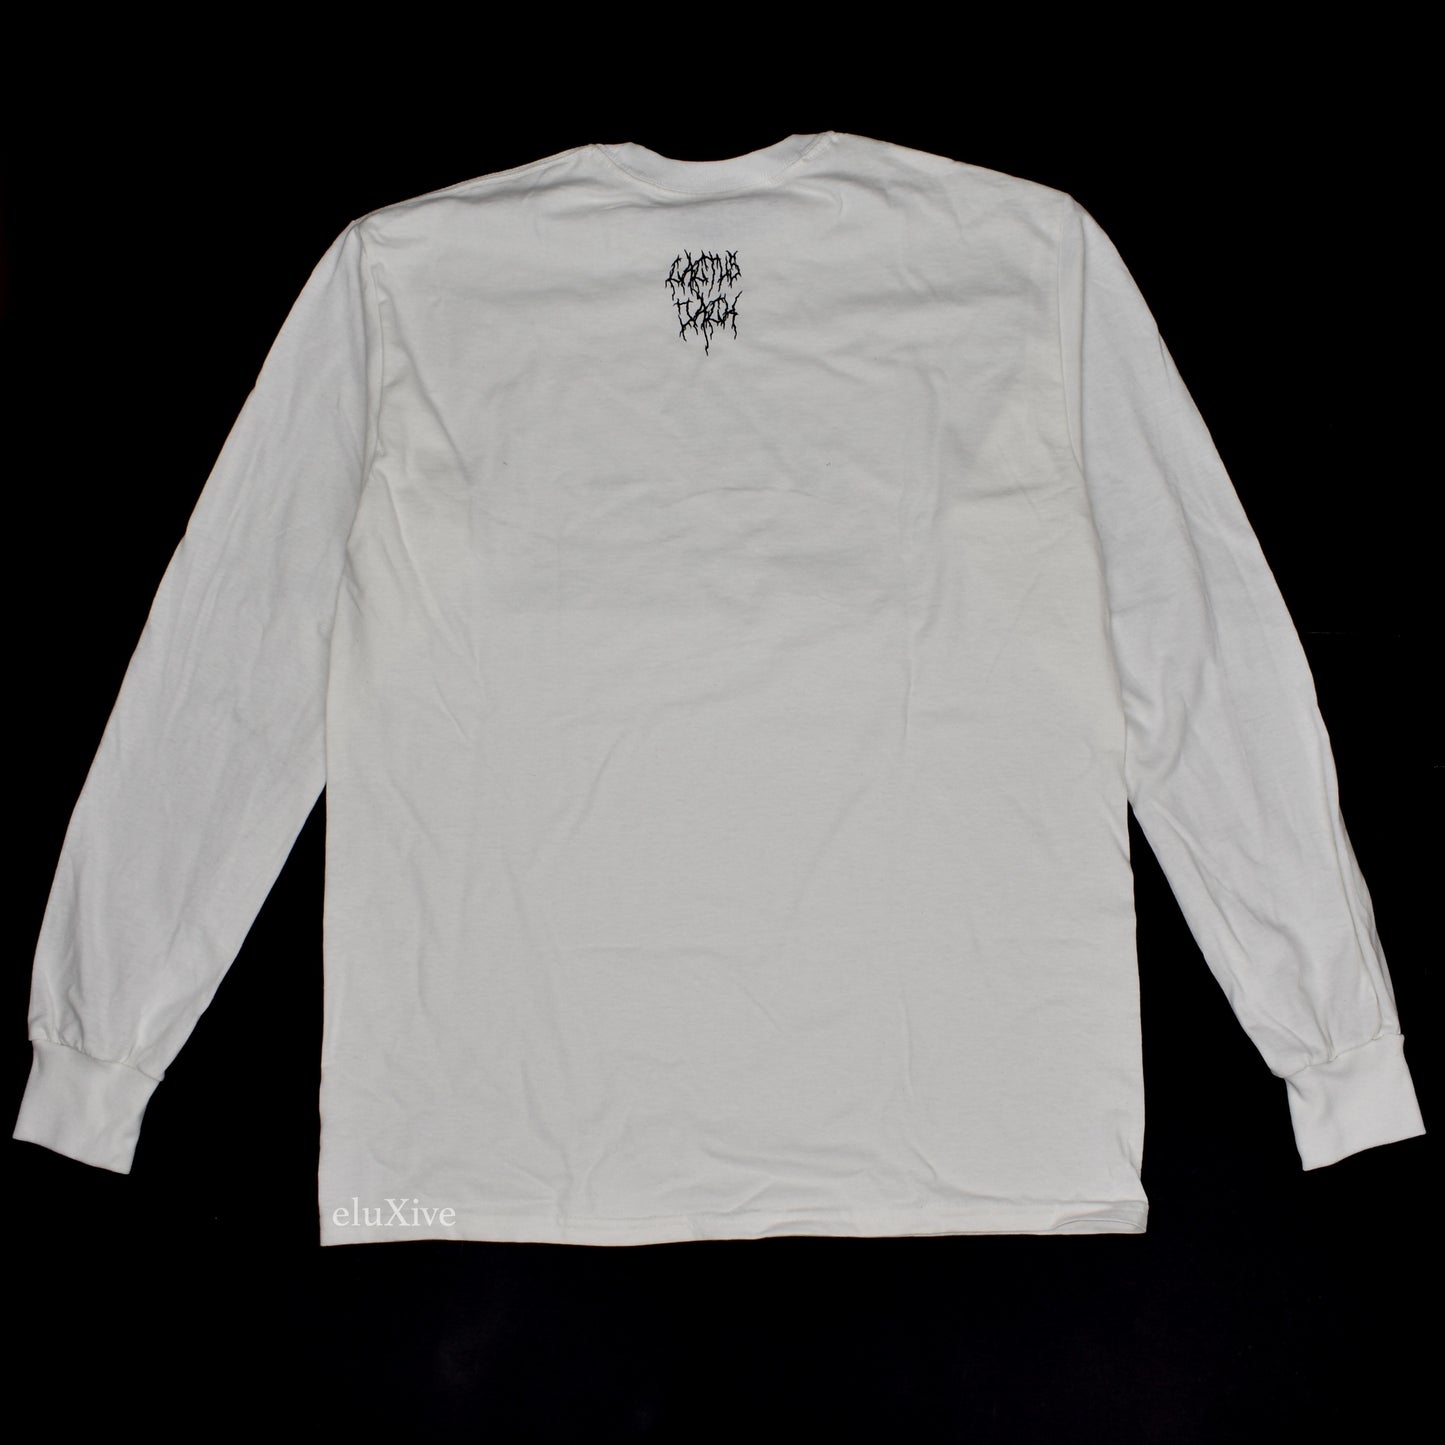 Nike x Travis Scott - Paisley SB Logo L/S T-Shirt (White)